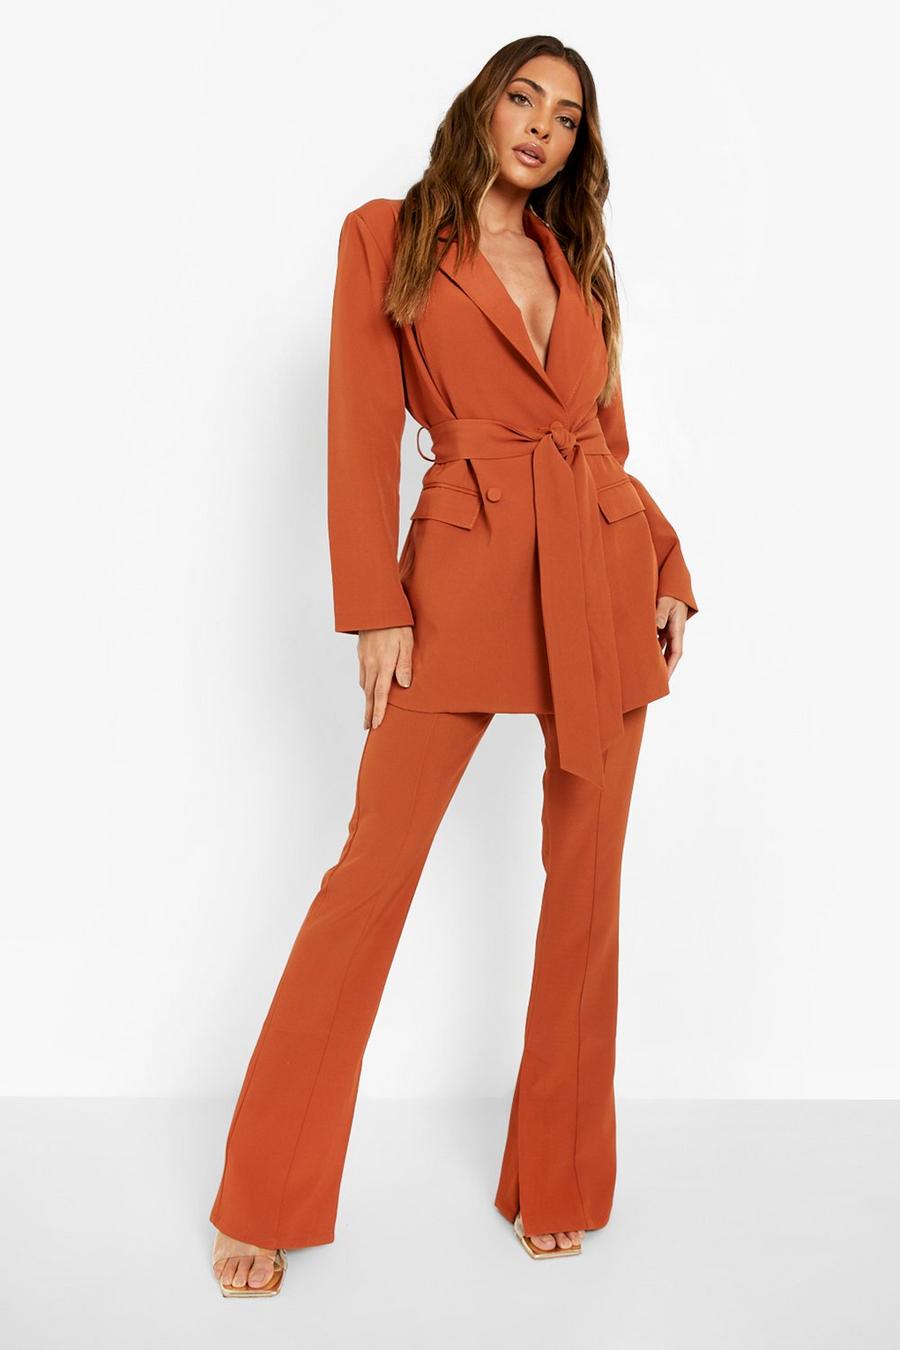 Pantalon ajusté fendu sur le côté, Terracotta orange